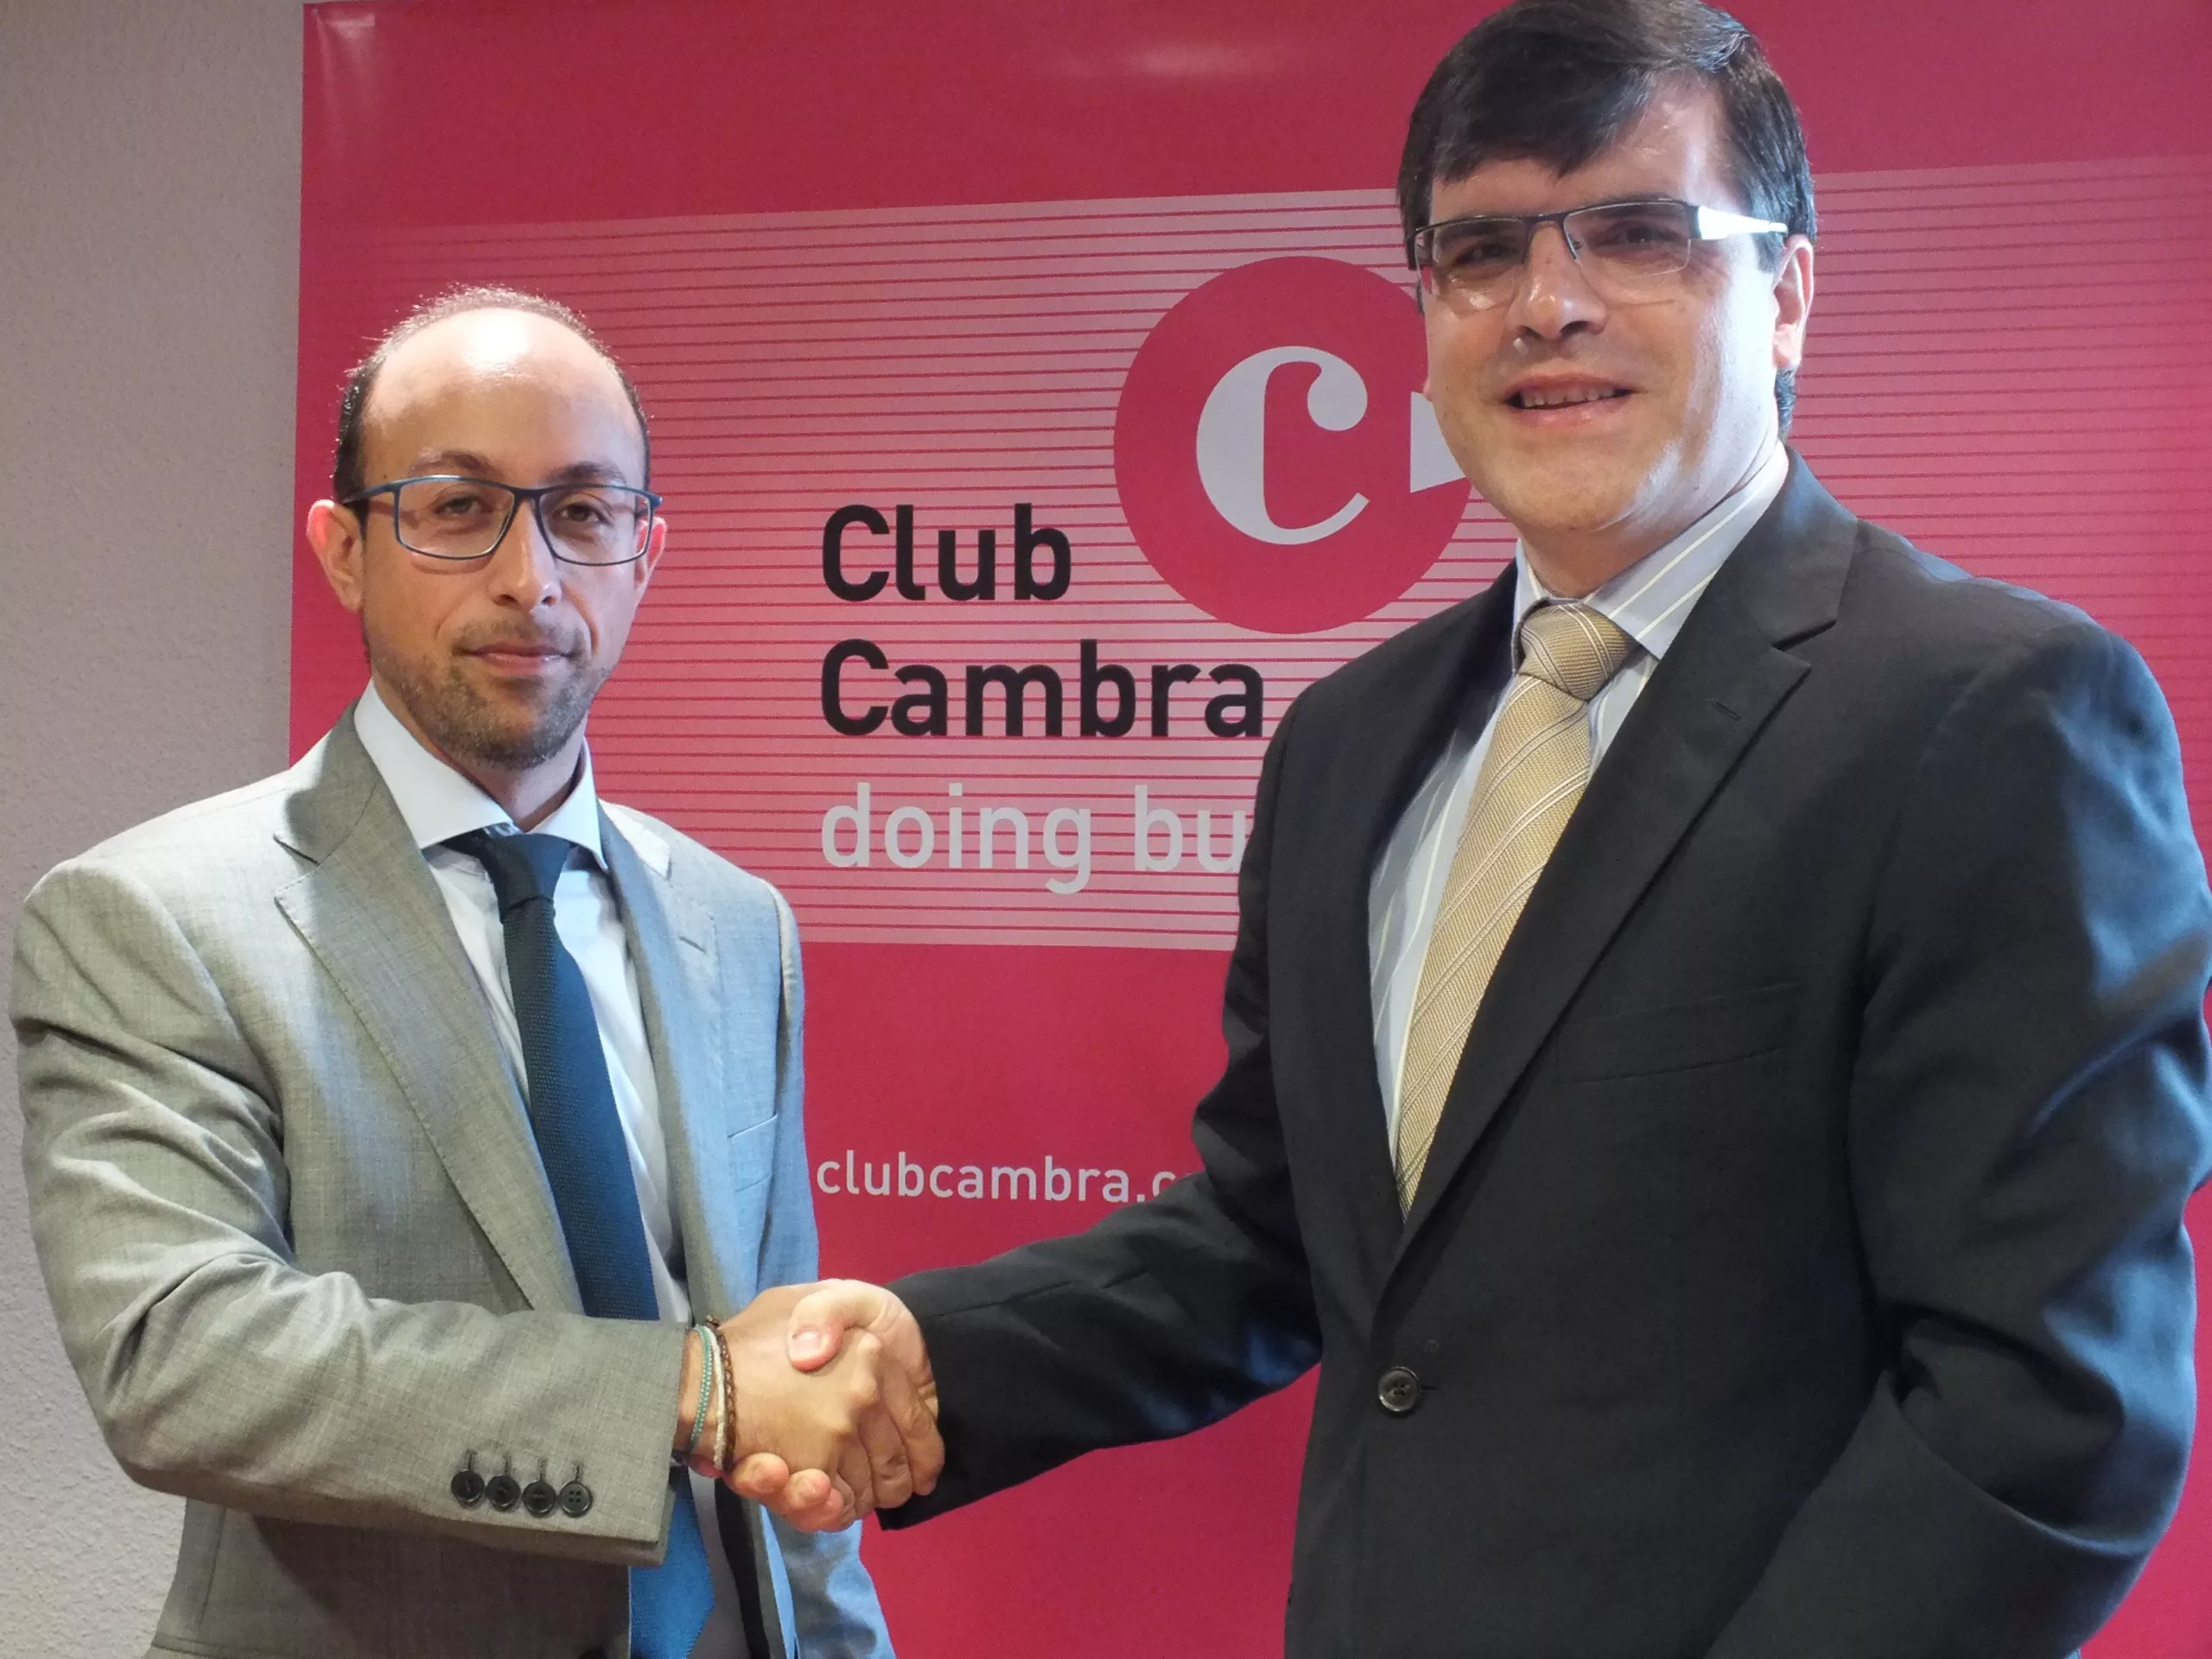 El Club Cambra i TecniTasa signen un acord per consolidar projectes d’emprenedoria